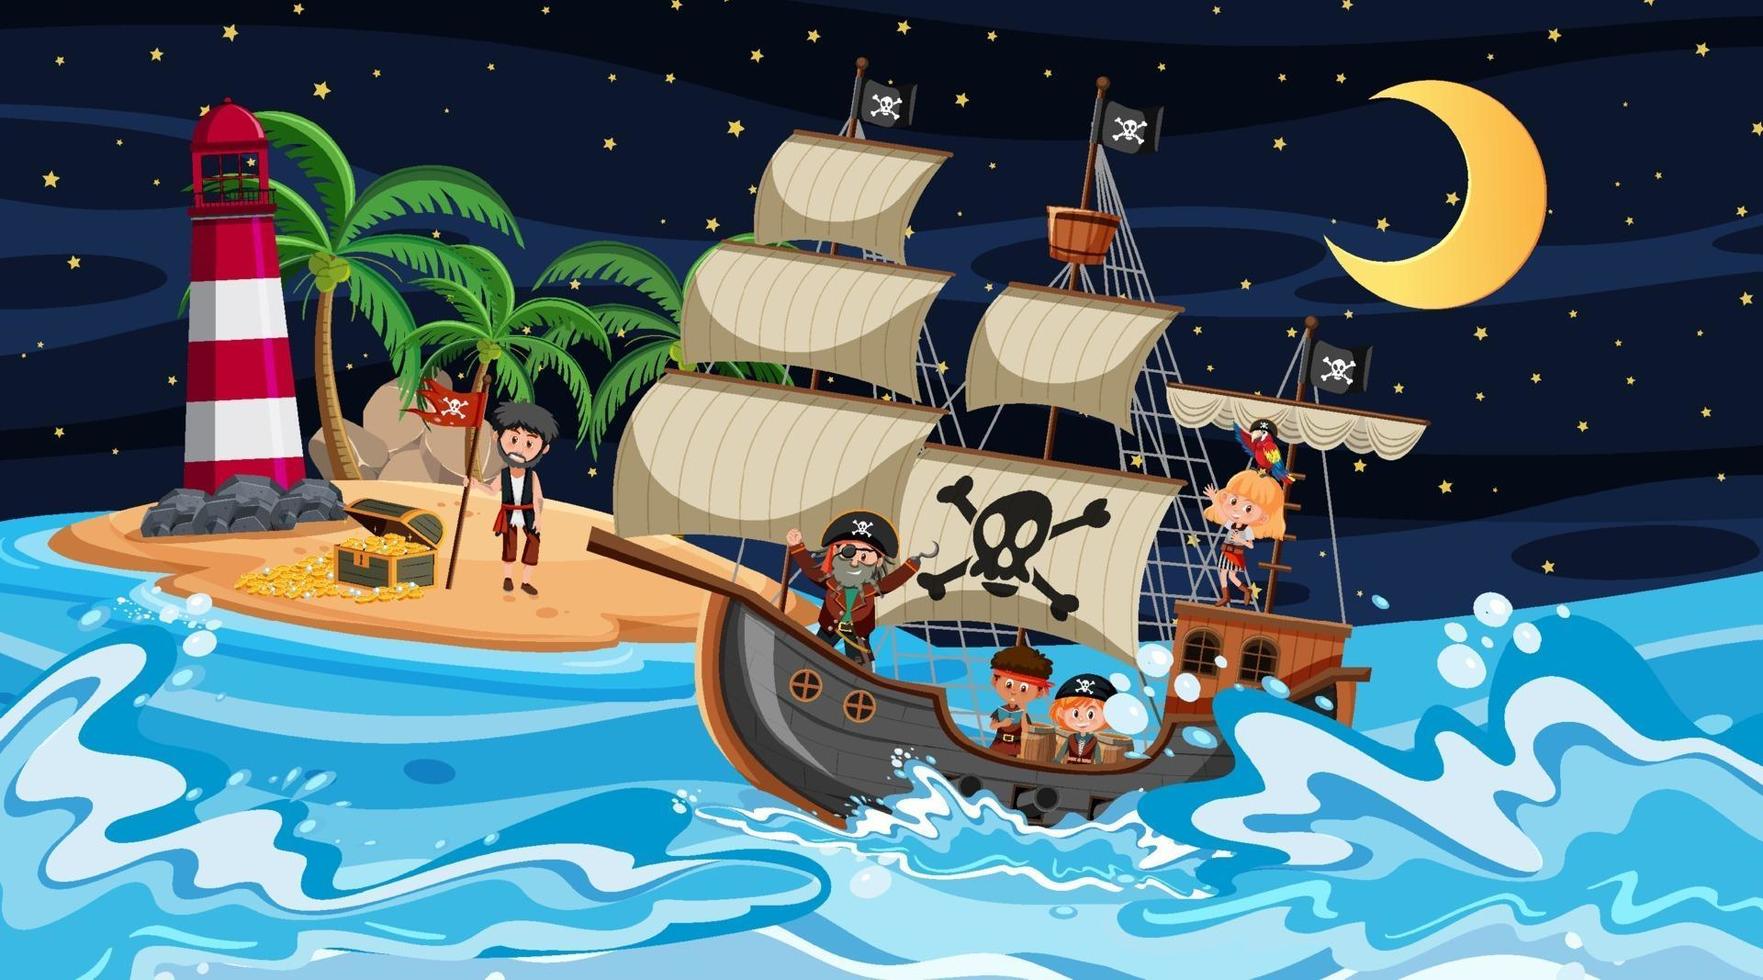 isla con barco pirata en la escena nocturna en estilo de dibujos animados vector